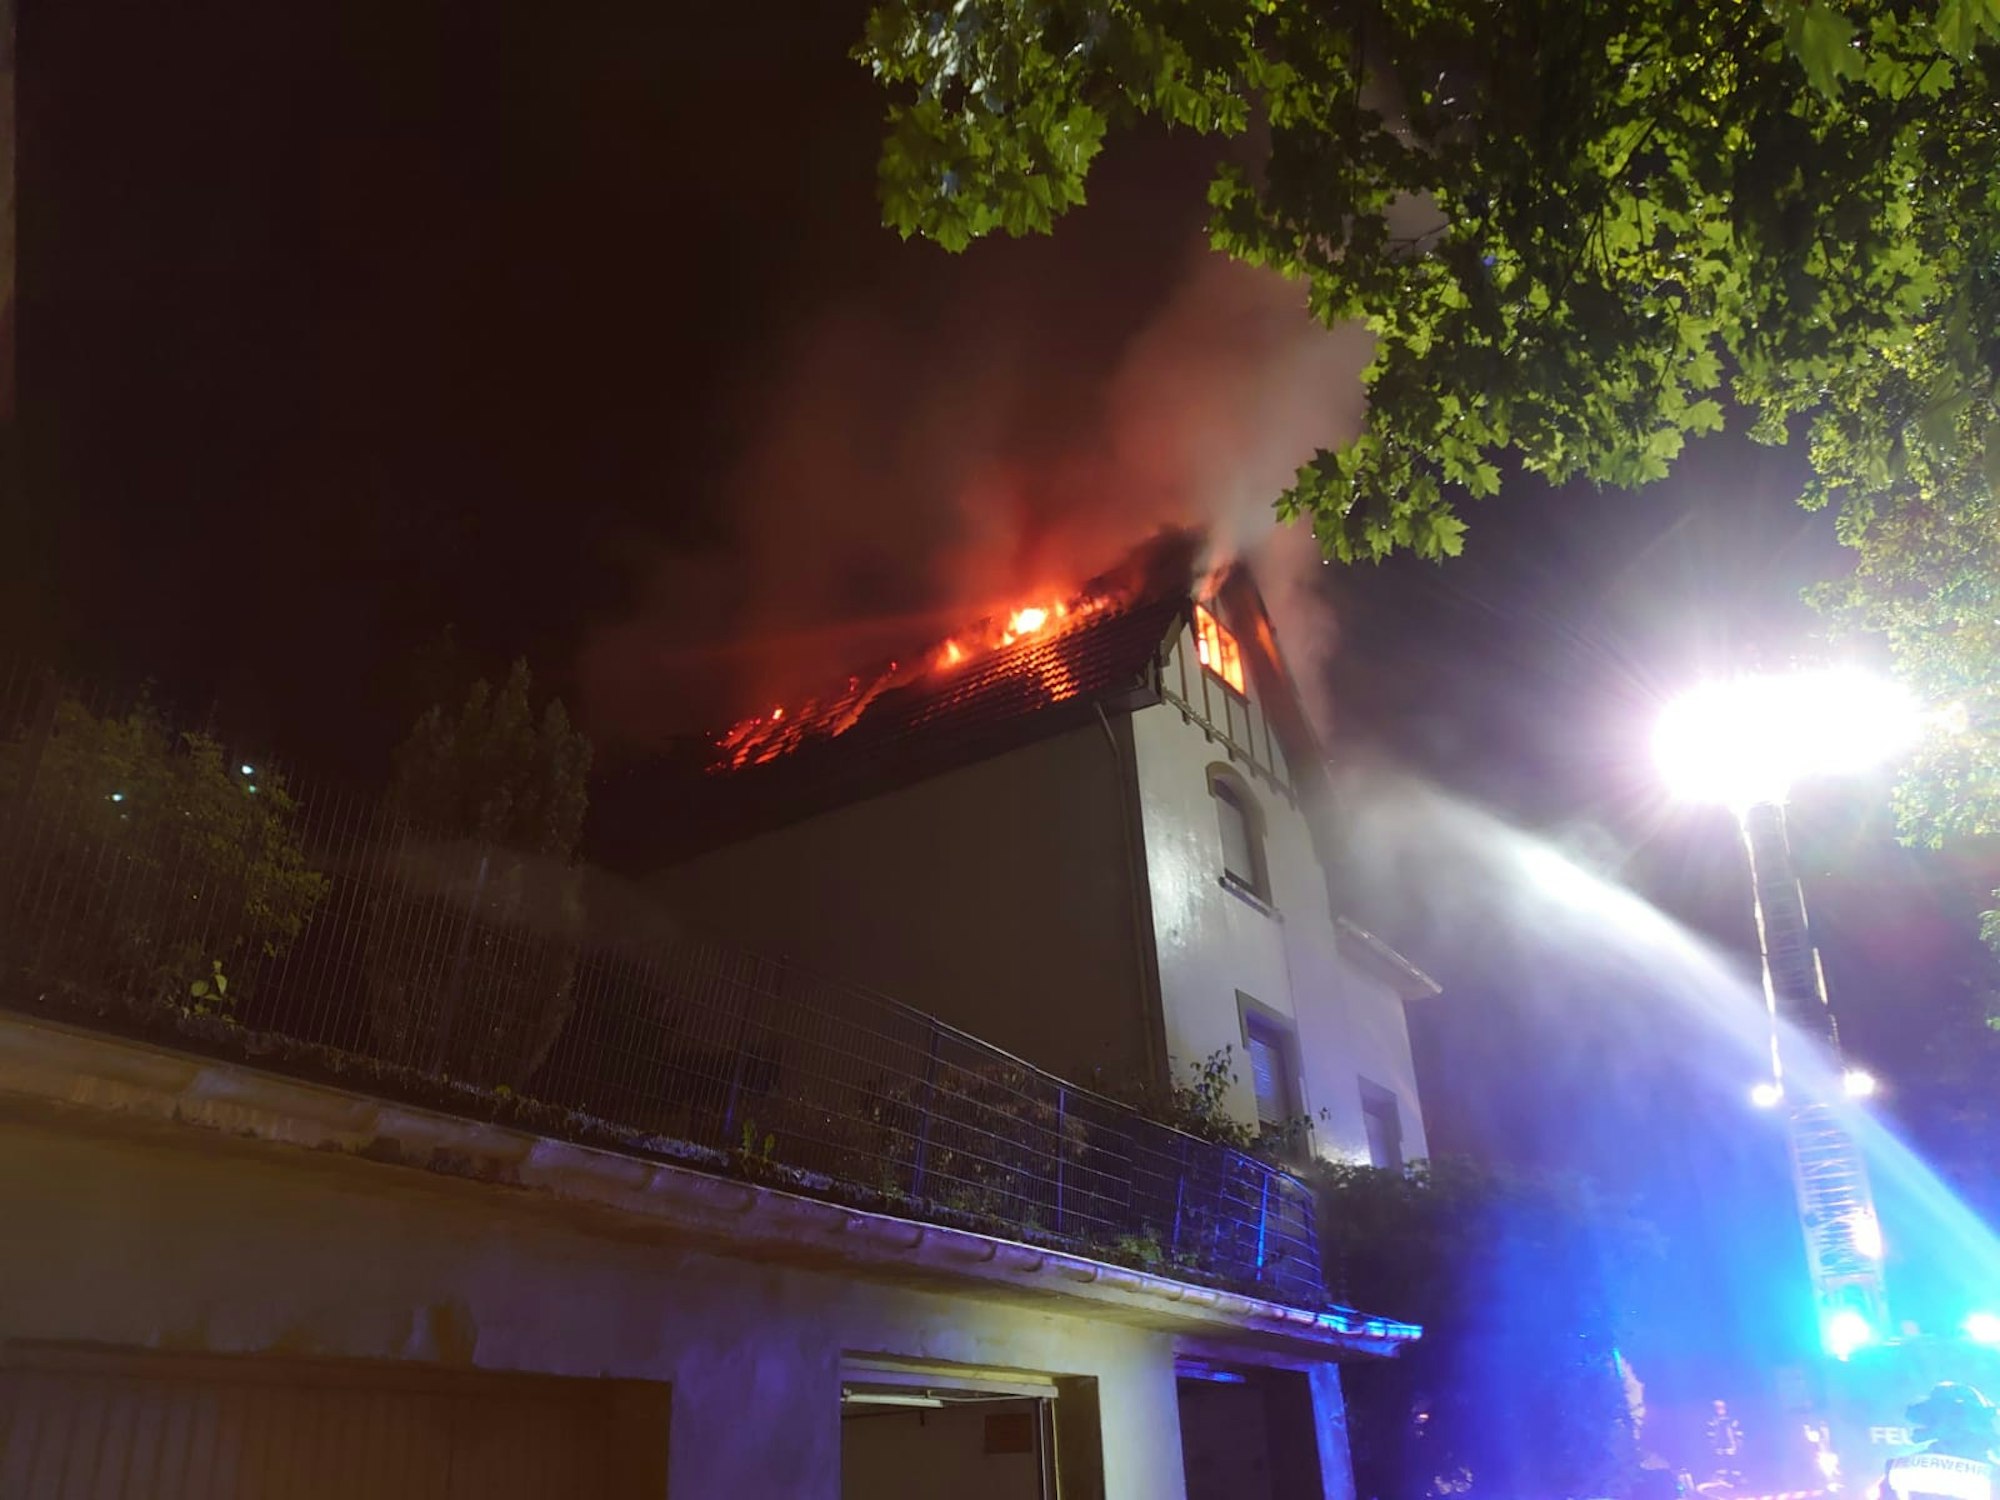 Freiwillige Feuerwehr Schalksmühle veröffentlichte auf Presseportal am 20.6.2021 Fotos von einem Dachstuhlbrand.